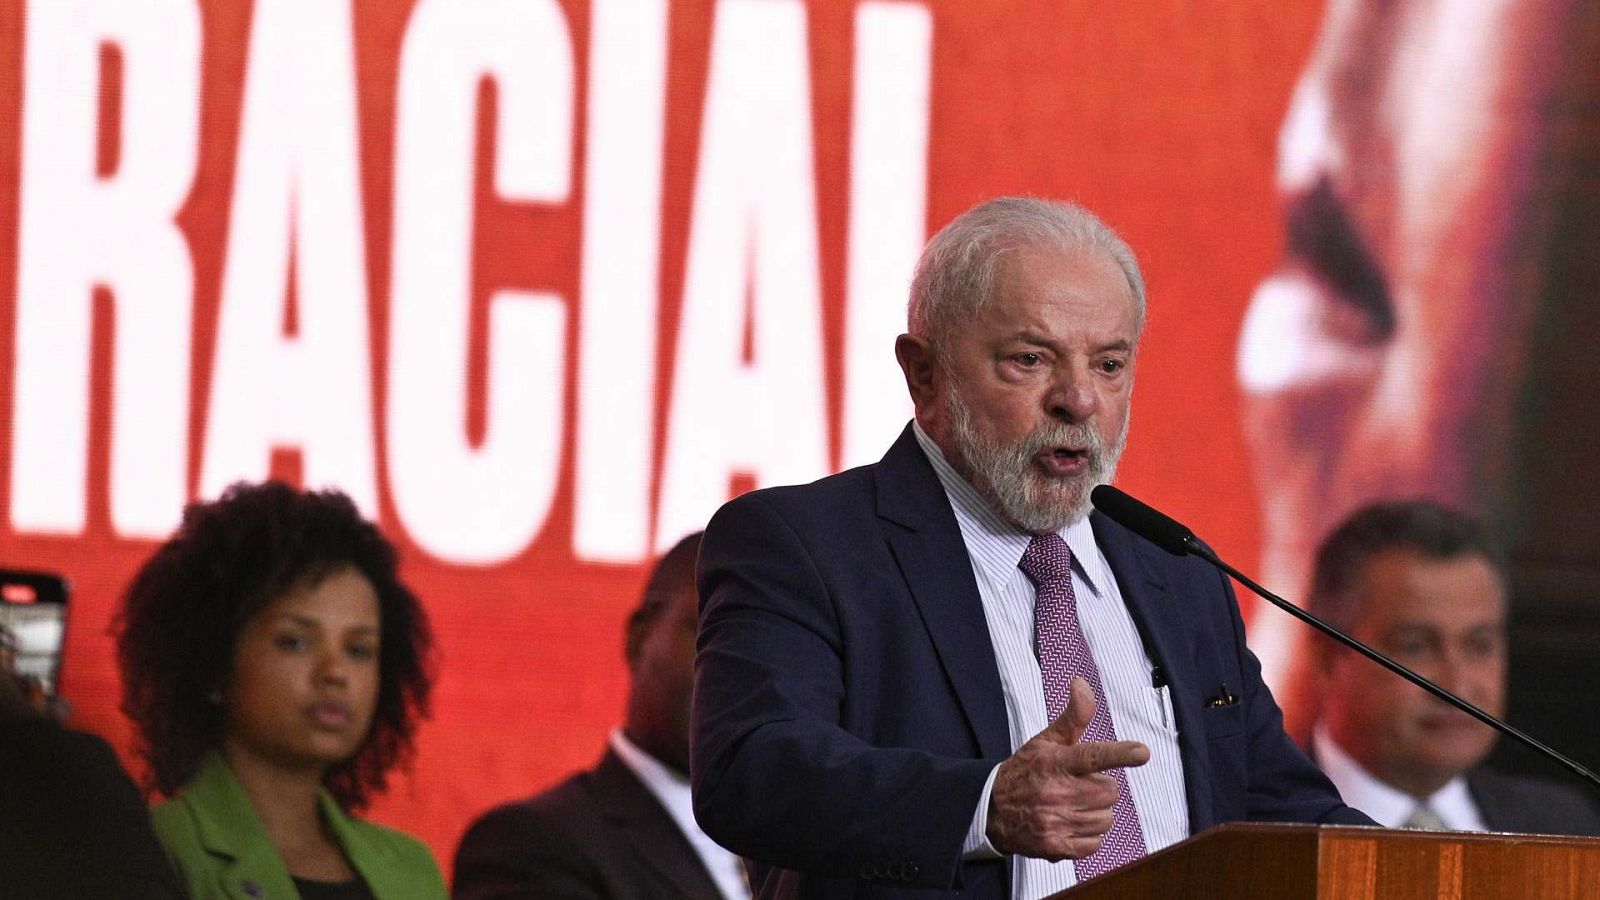 El presidente de Brasil, Luiz Inácio Lula da Silva, pronuncia su discurso en la celebración de los 20 años de políticas de igualdad racial en Brasil.